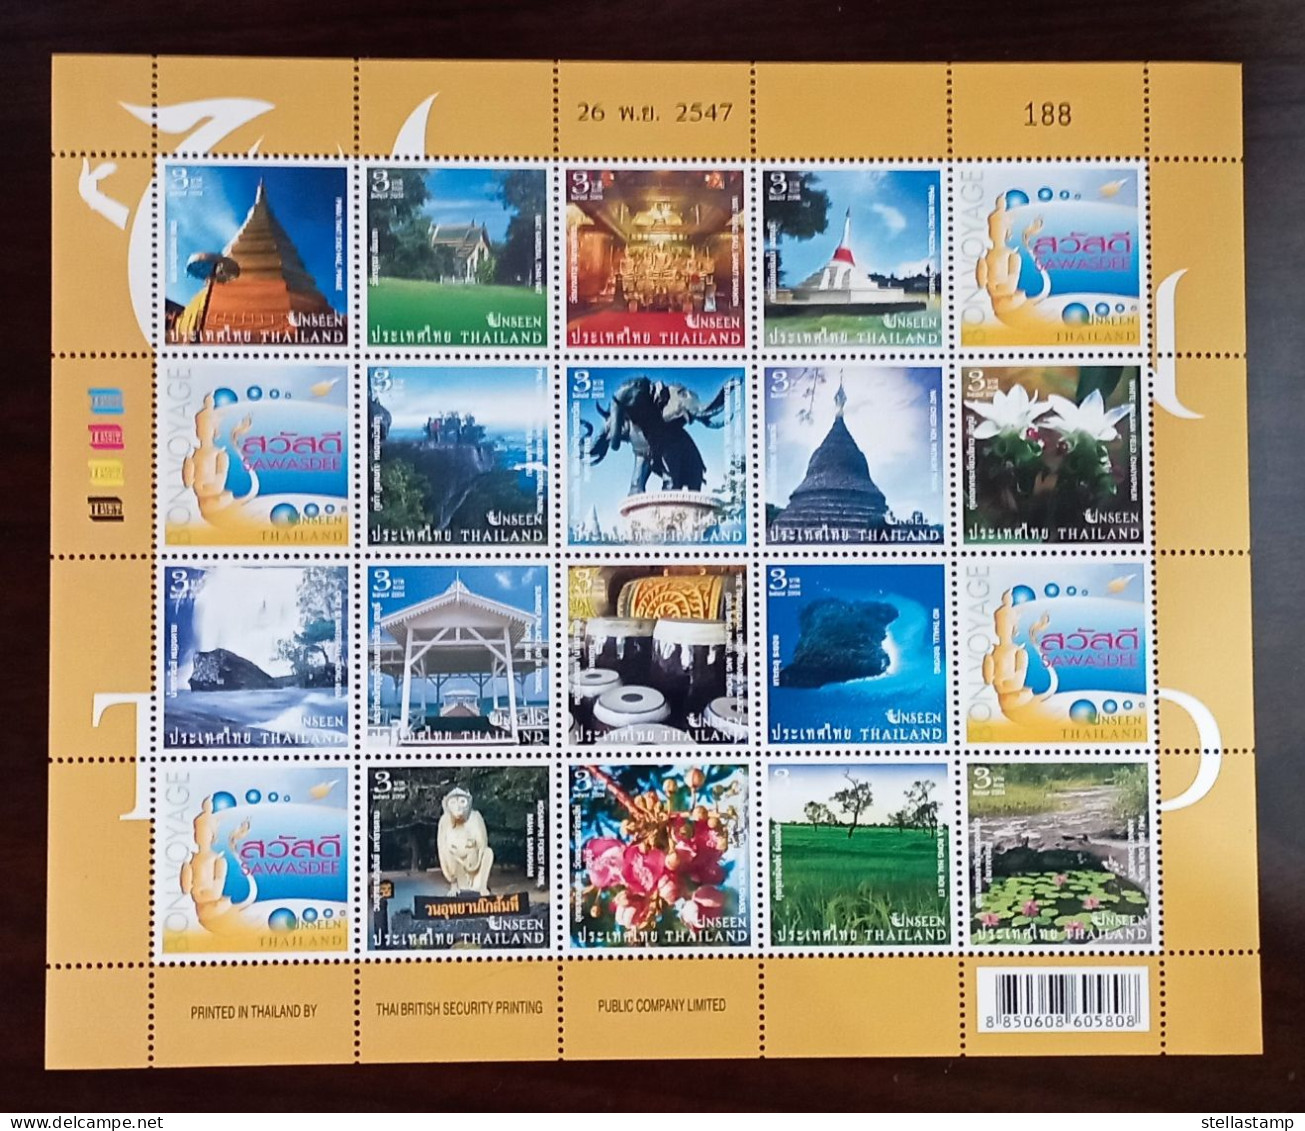 Thailand Stamp FS 2004 Unseen Thailand 4th - Thailand